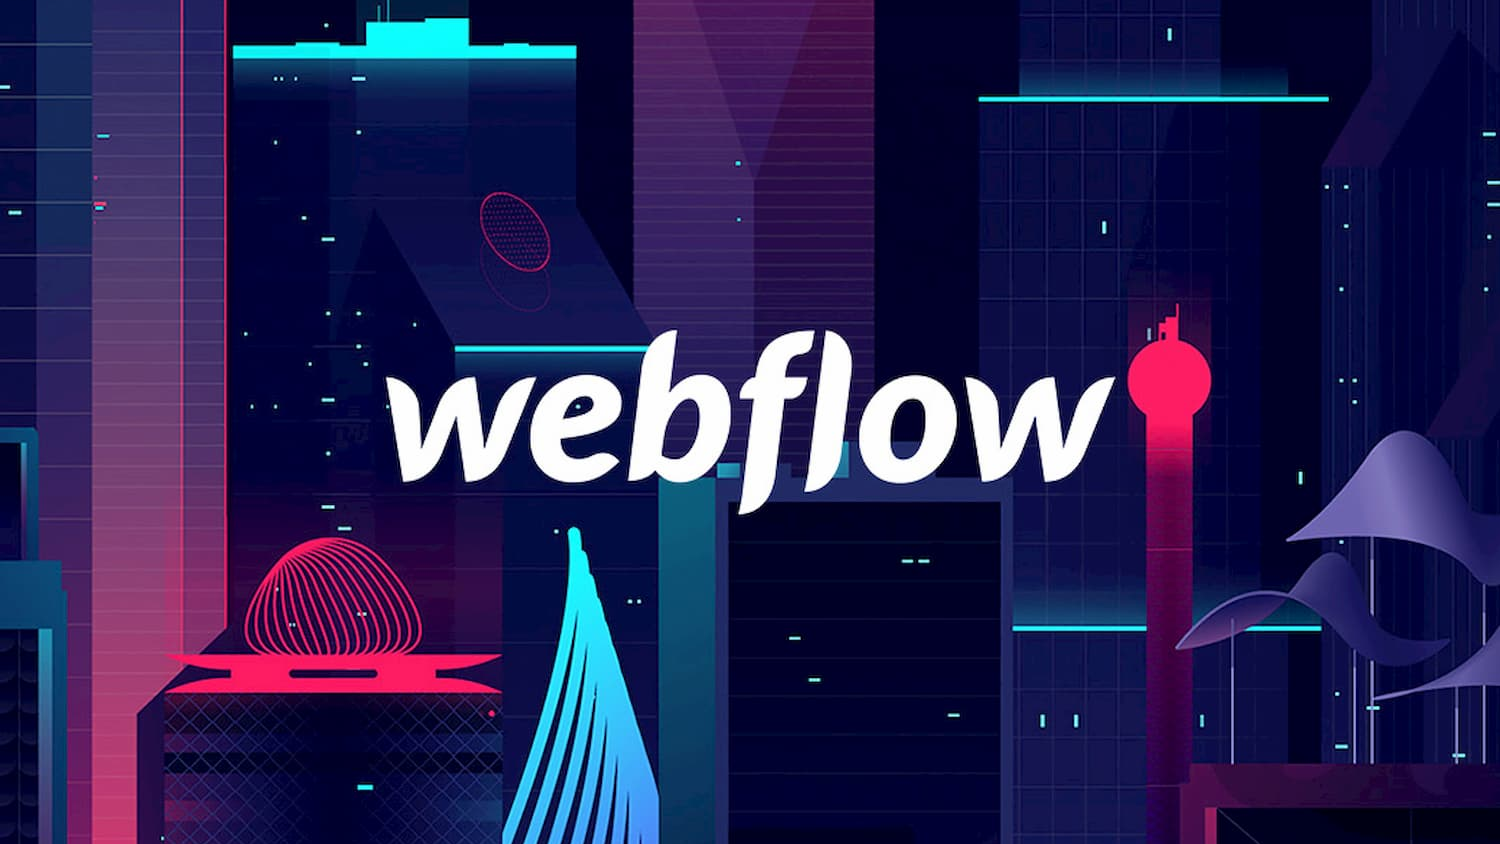 Webflow image (Webflow vs wordpress article)